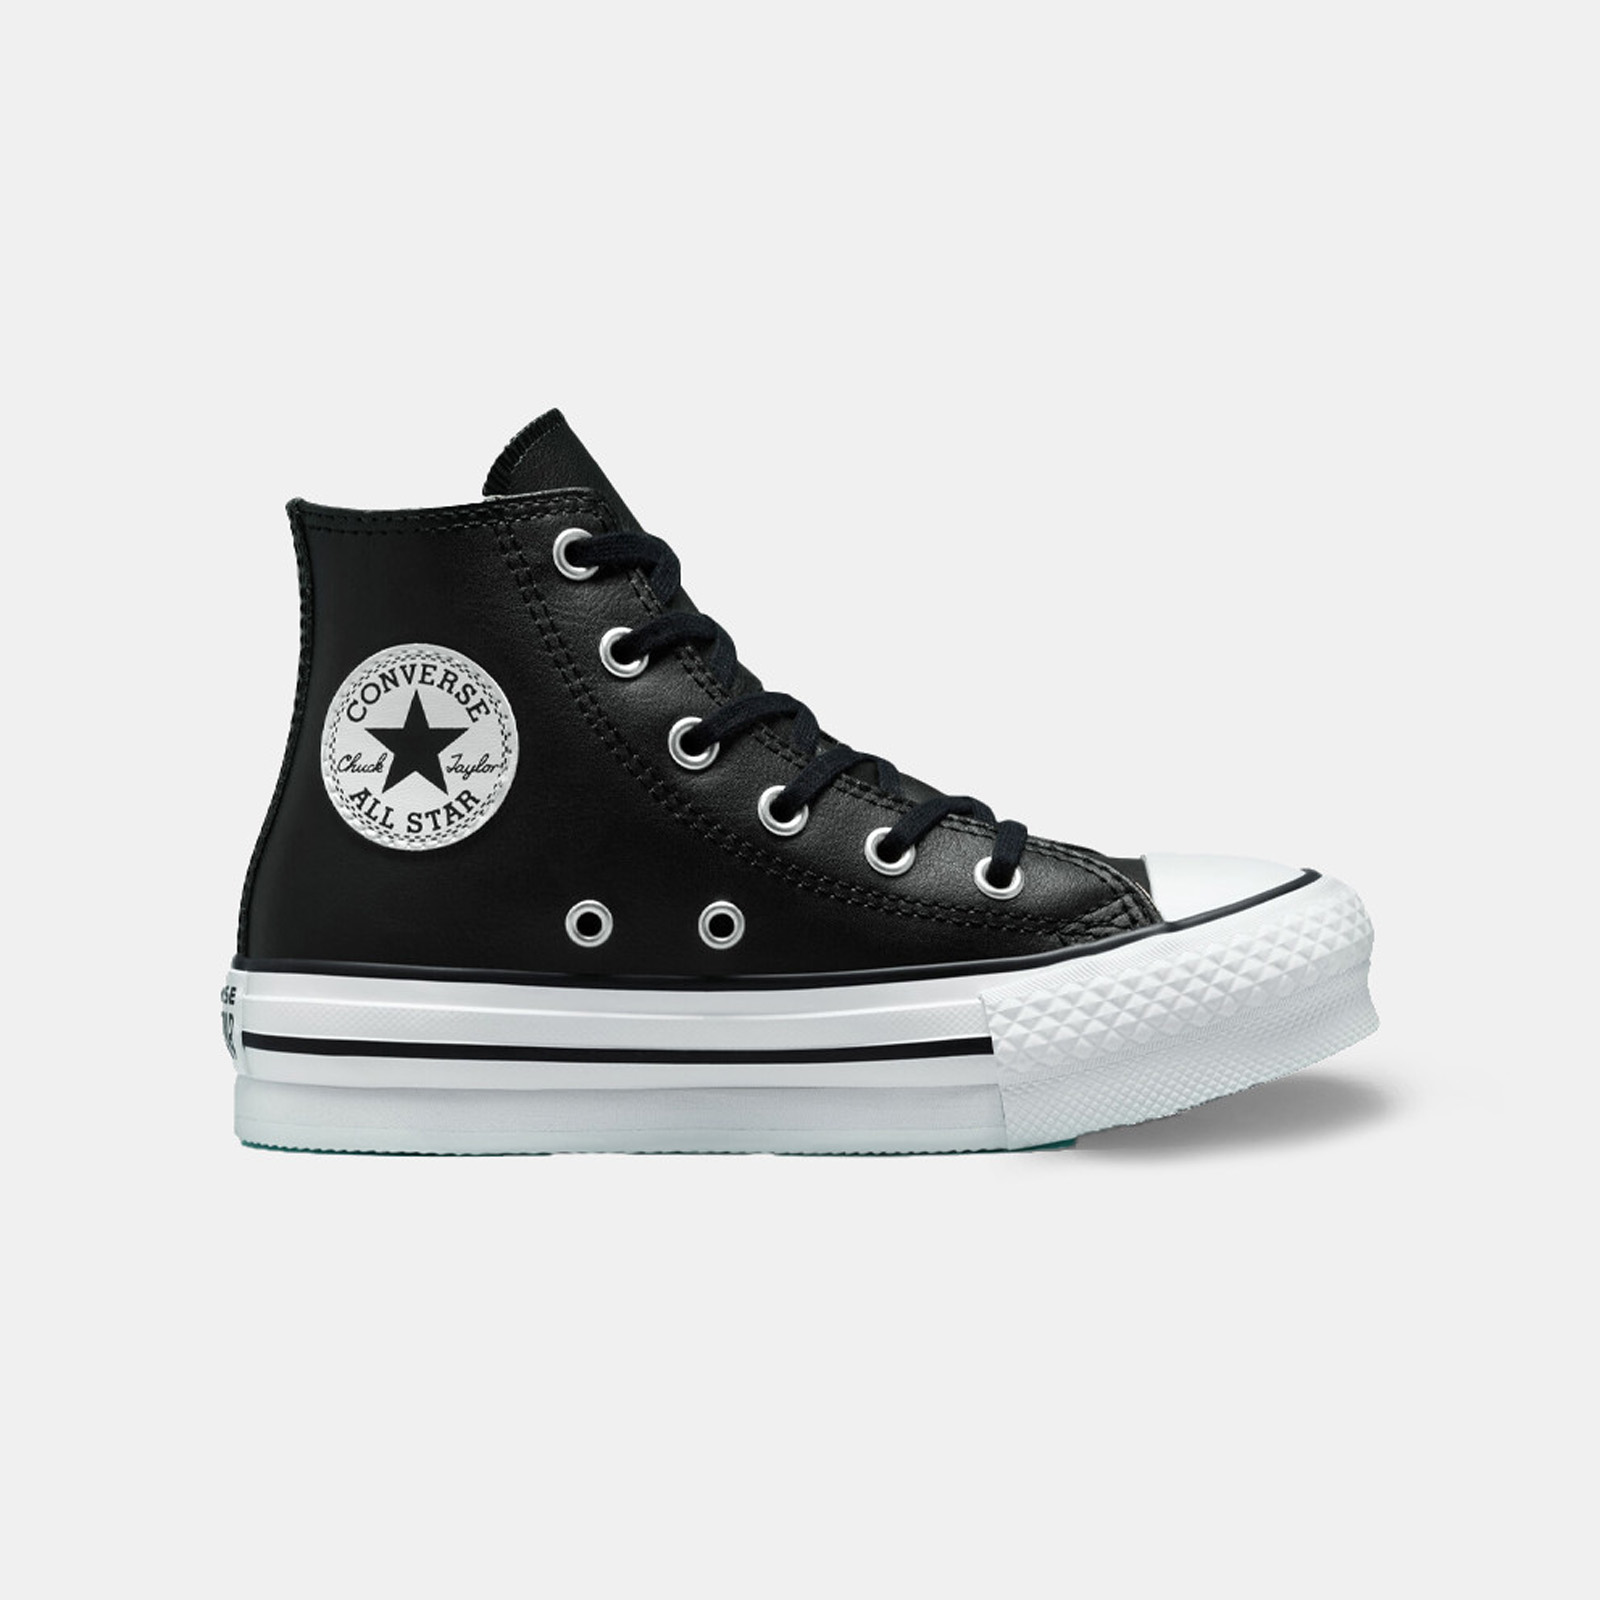 Παιδικά > Παπούτσια > Sneaker > Μποτάκι High Cut Converse - CHUCK TAYLOR ALL STAR EVA LIFT LEATHER - 001-BLACK/NATURAL IVORY/WHITE